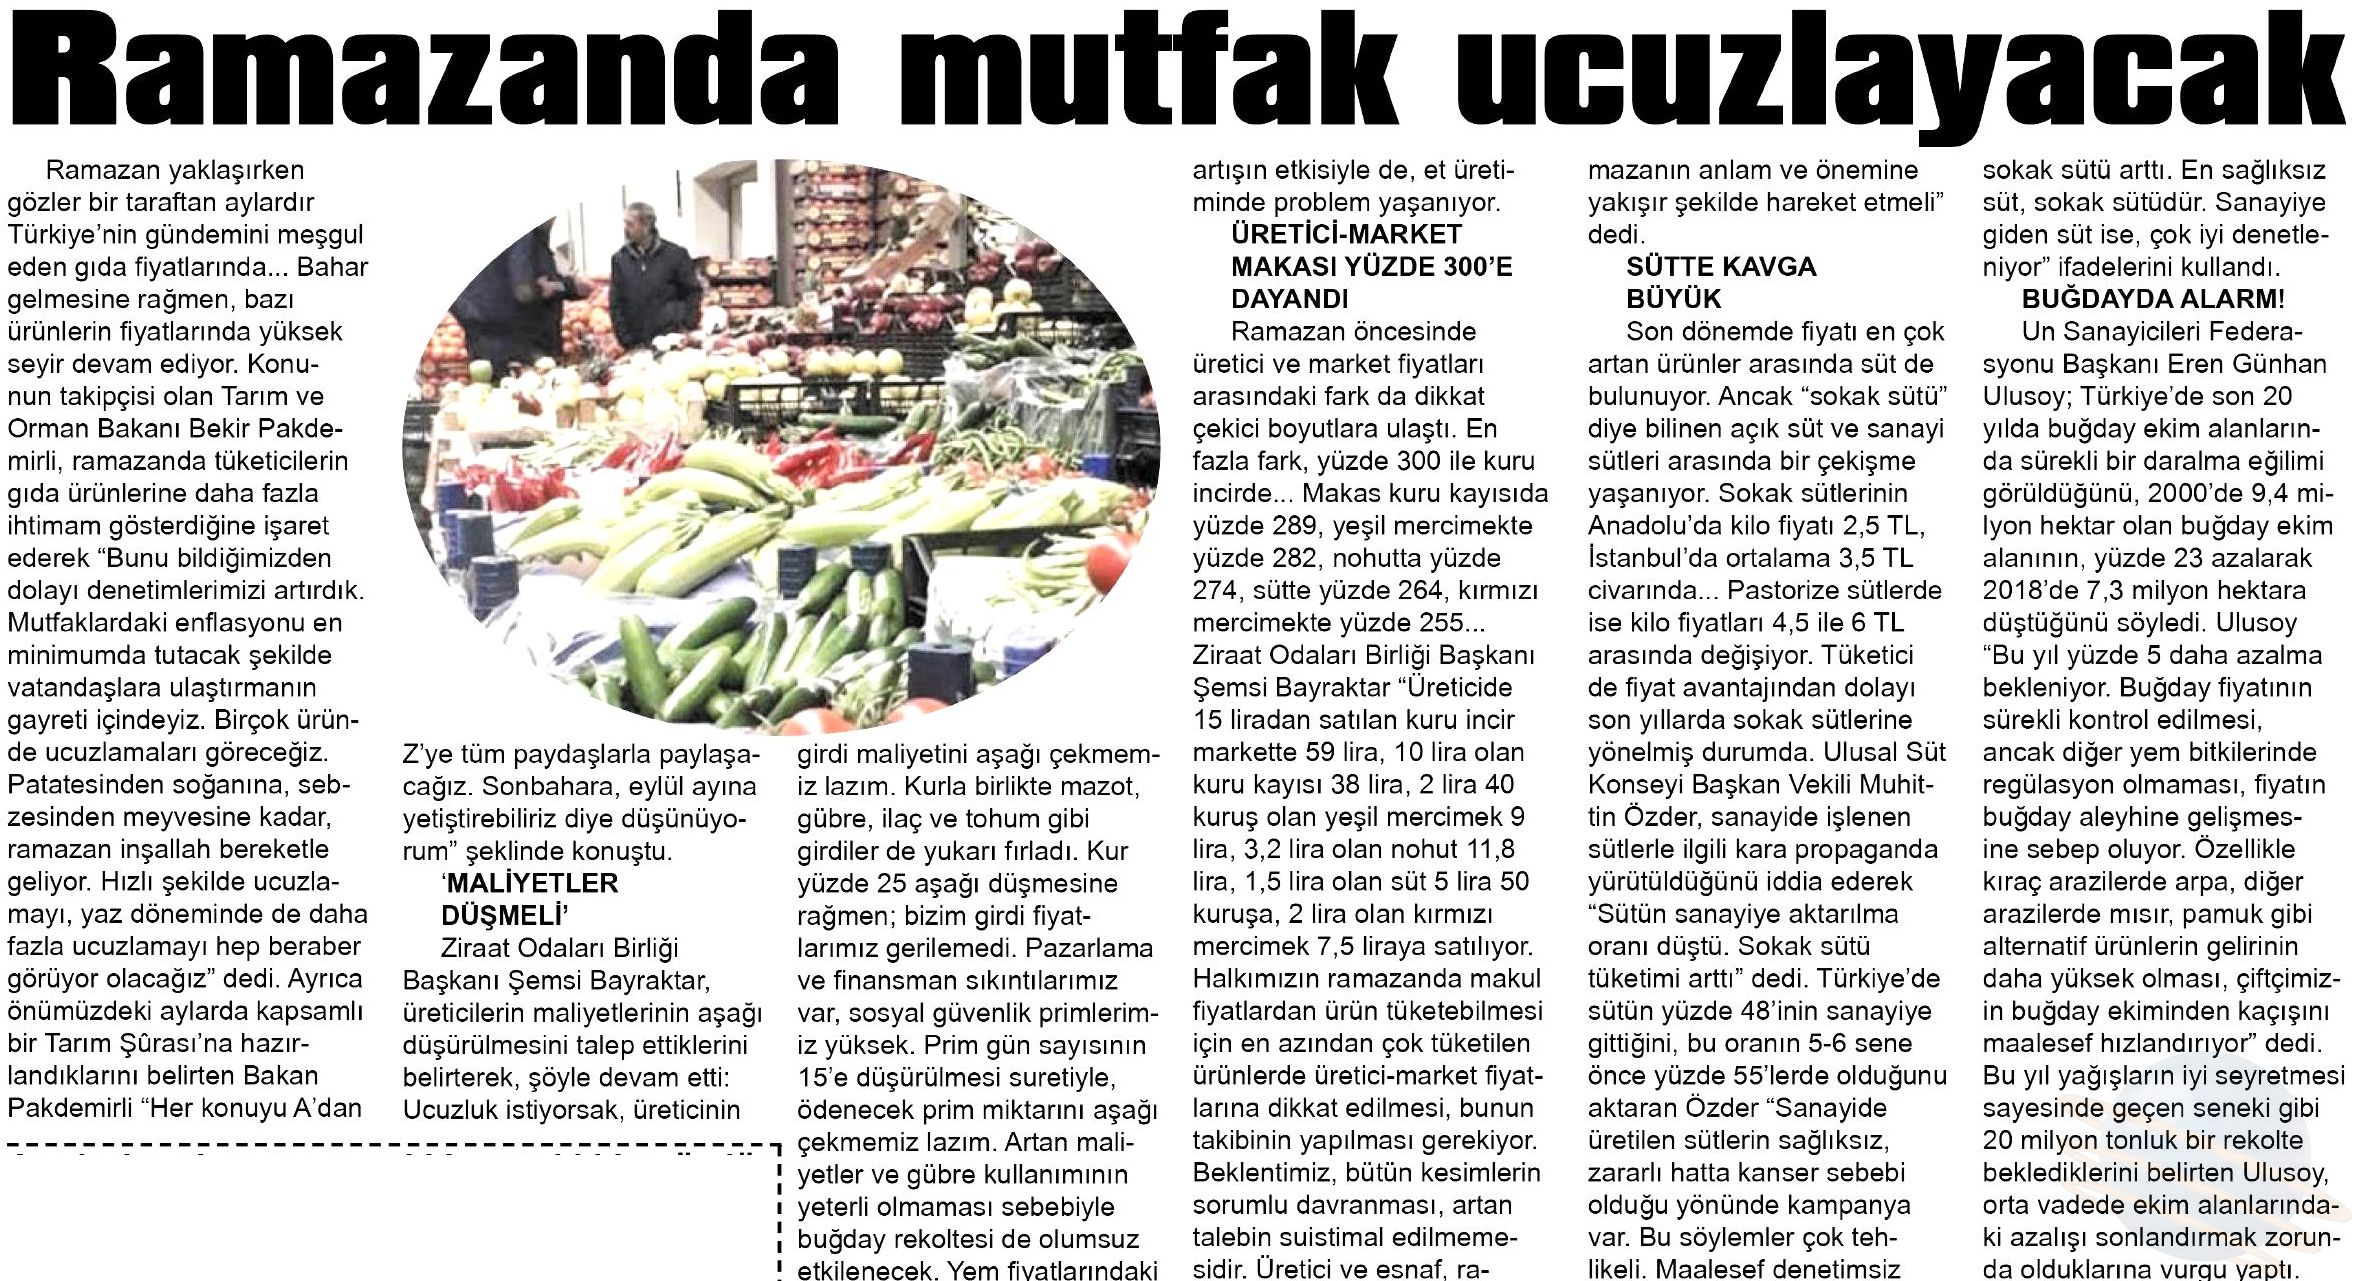 TUSAF Doğruyol Gazetesi 29.04.2019.jpg